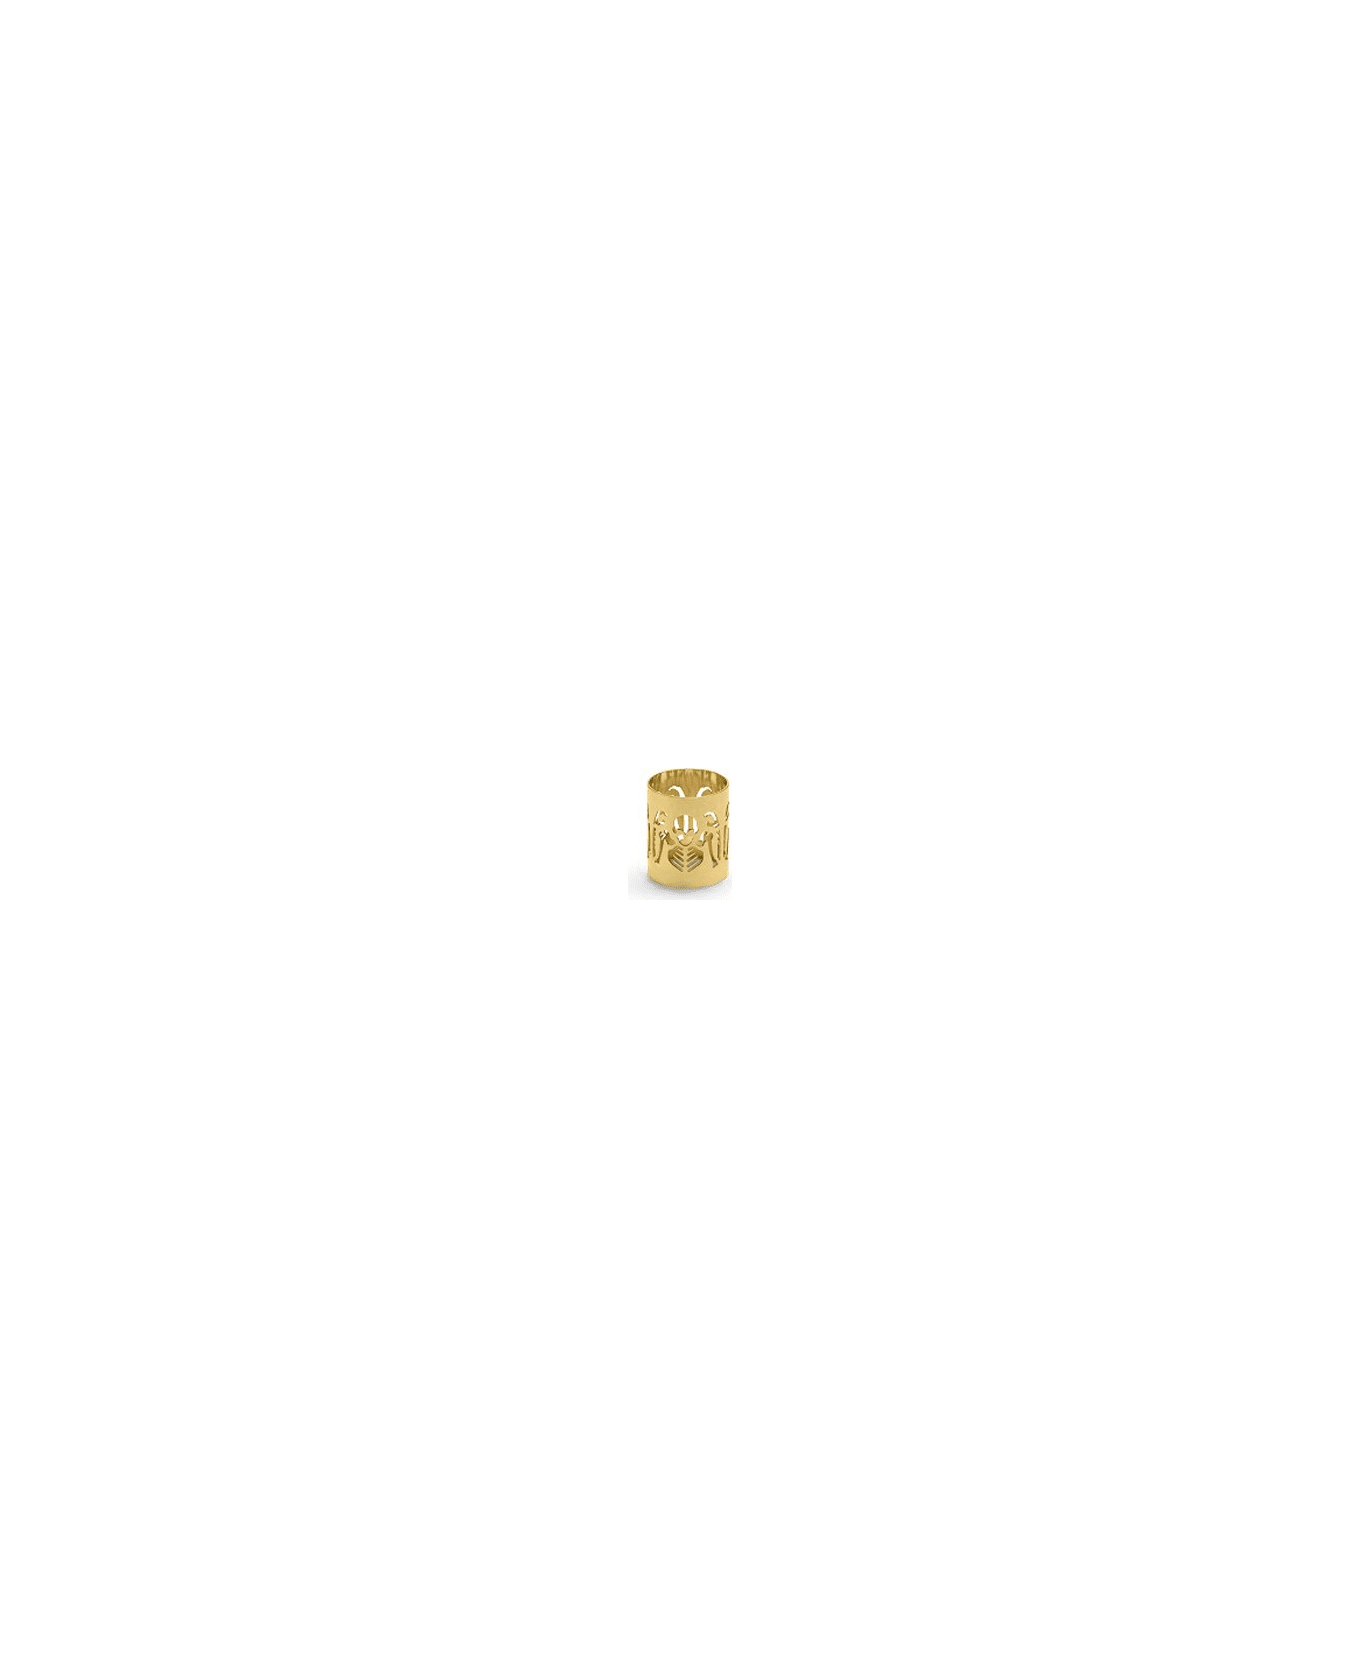 Ghidini 1961 Perished - Napkin Holder Polished Gold - Polished gold テーブルウェア